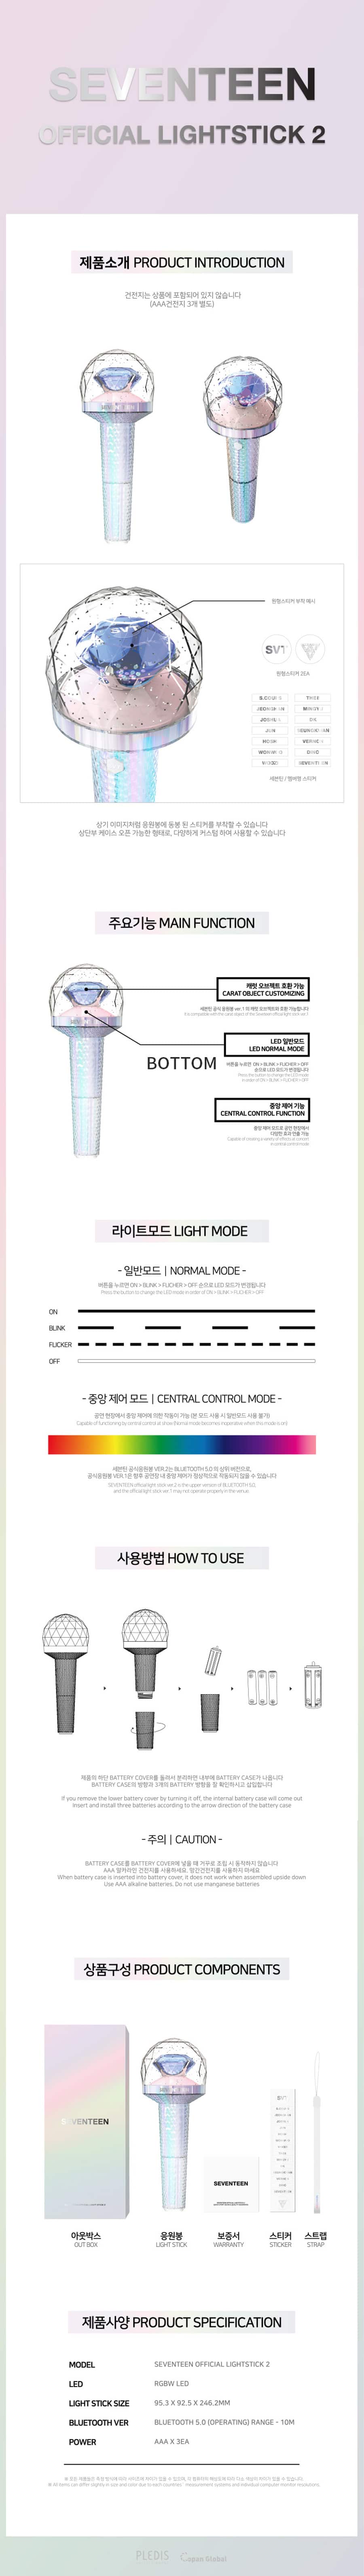 SEVENTEEN Official Light Stick Ver.2 - Kpop Wholesale